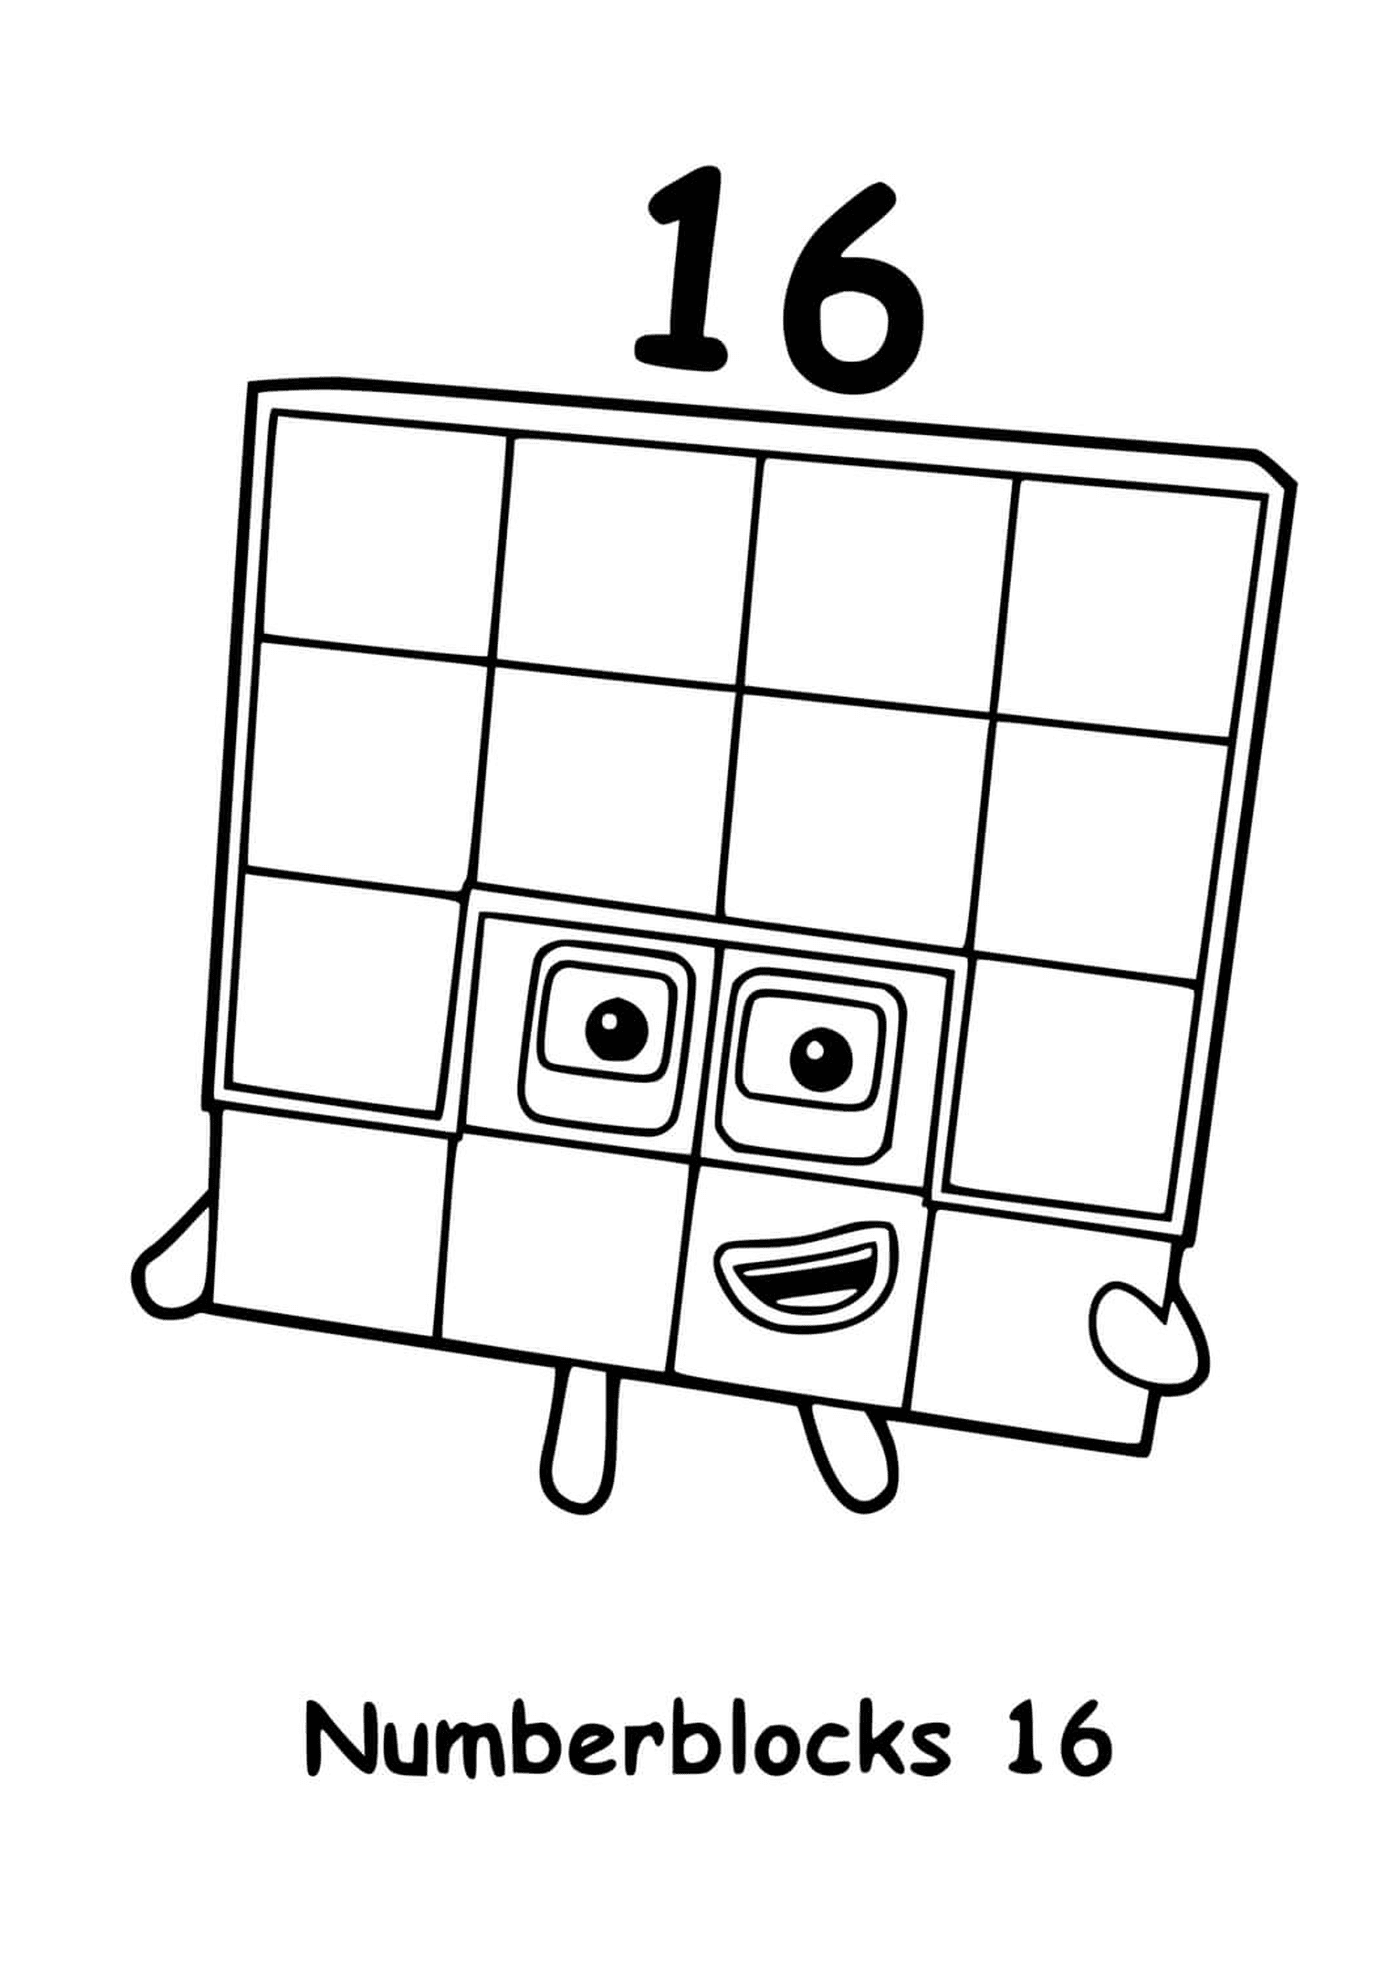  वर्ग के साथ संख्या क्रमांक १६ वर्ग का वर्ग 